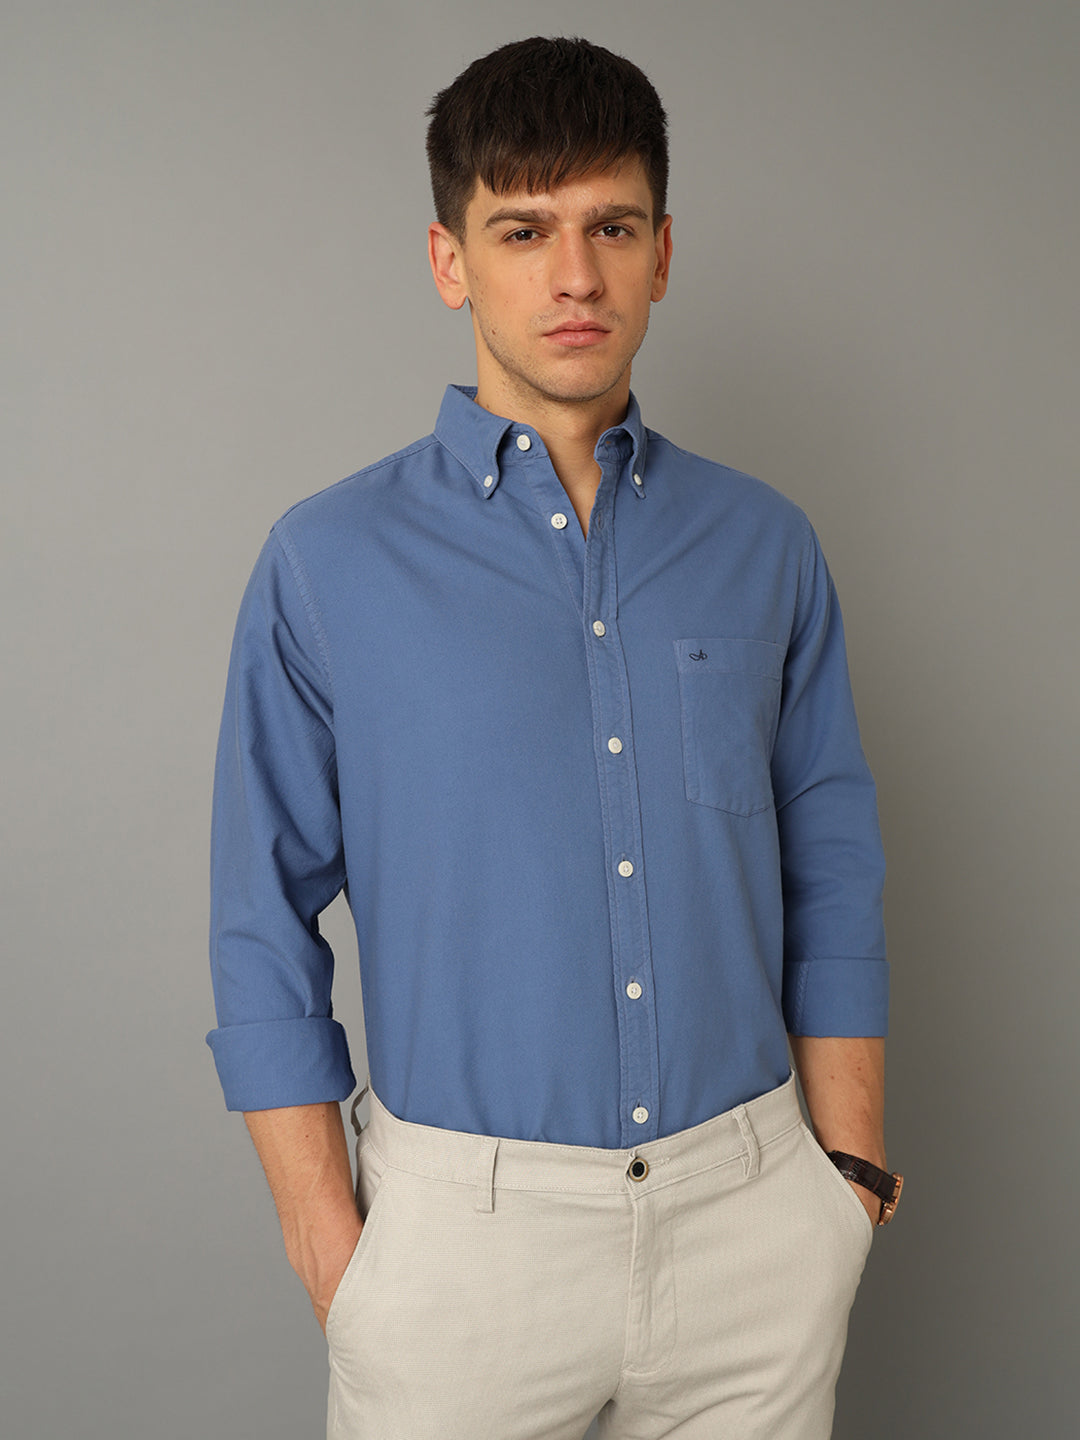 Aldeno Men Solid Formal Blue Shirt